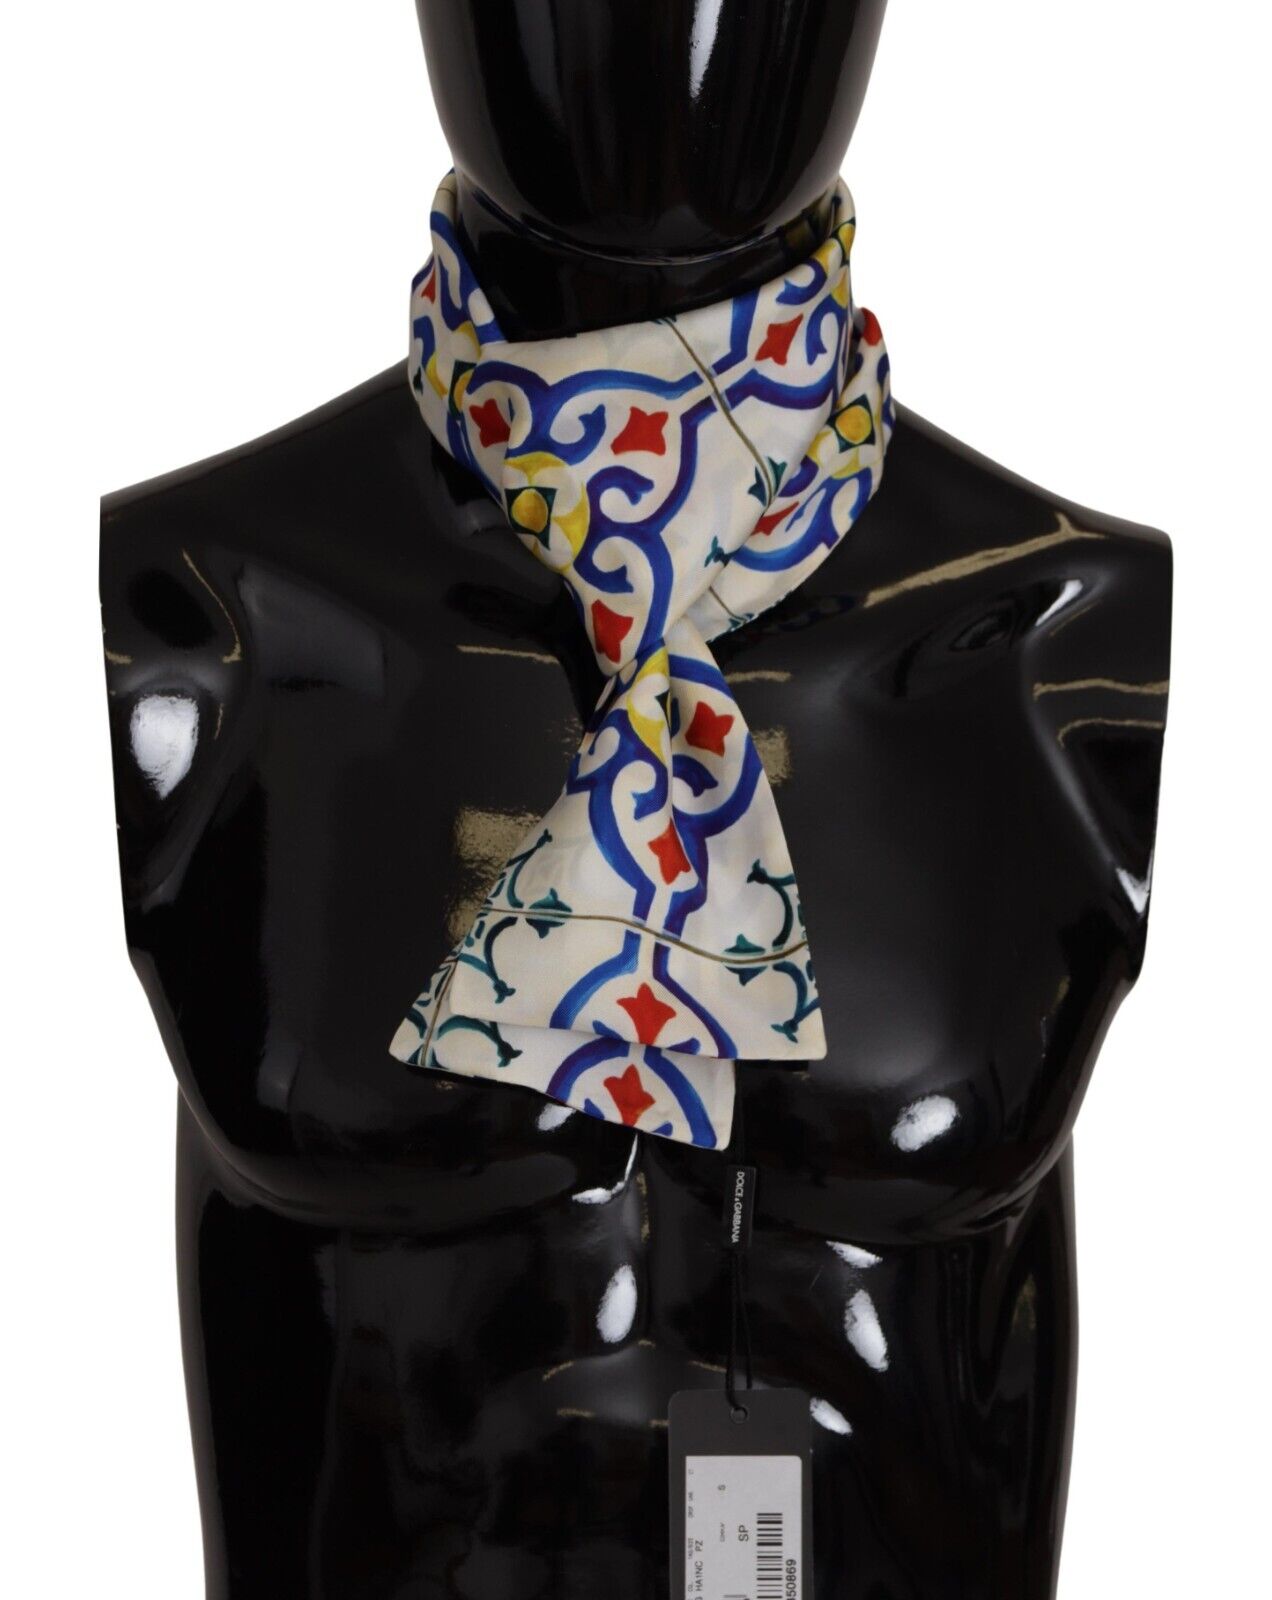 DOLCE & GABBANA Шарф Шелковый разноцветный шарф с принтом майолики Шаль 140см X 12см